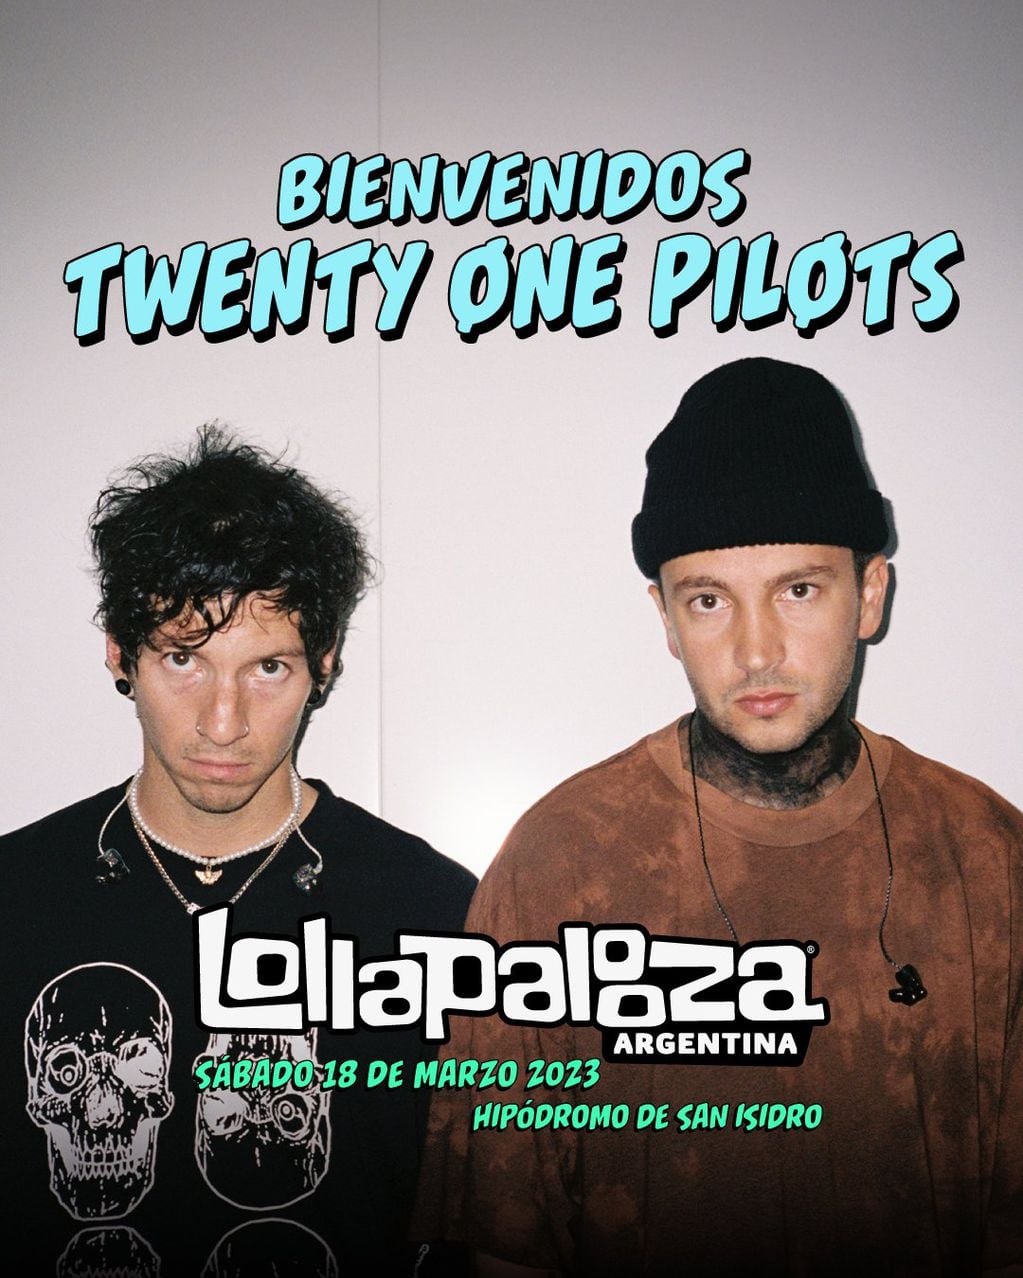 Cambios en el line up del Lollapalooza Argentina 2023: Twenty One Pilots reemplazará a Blink-182